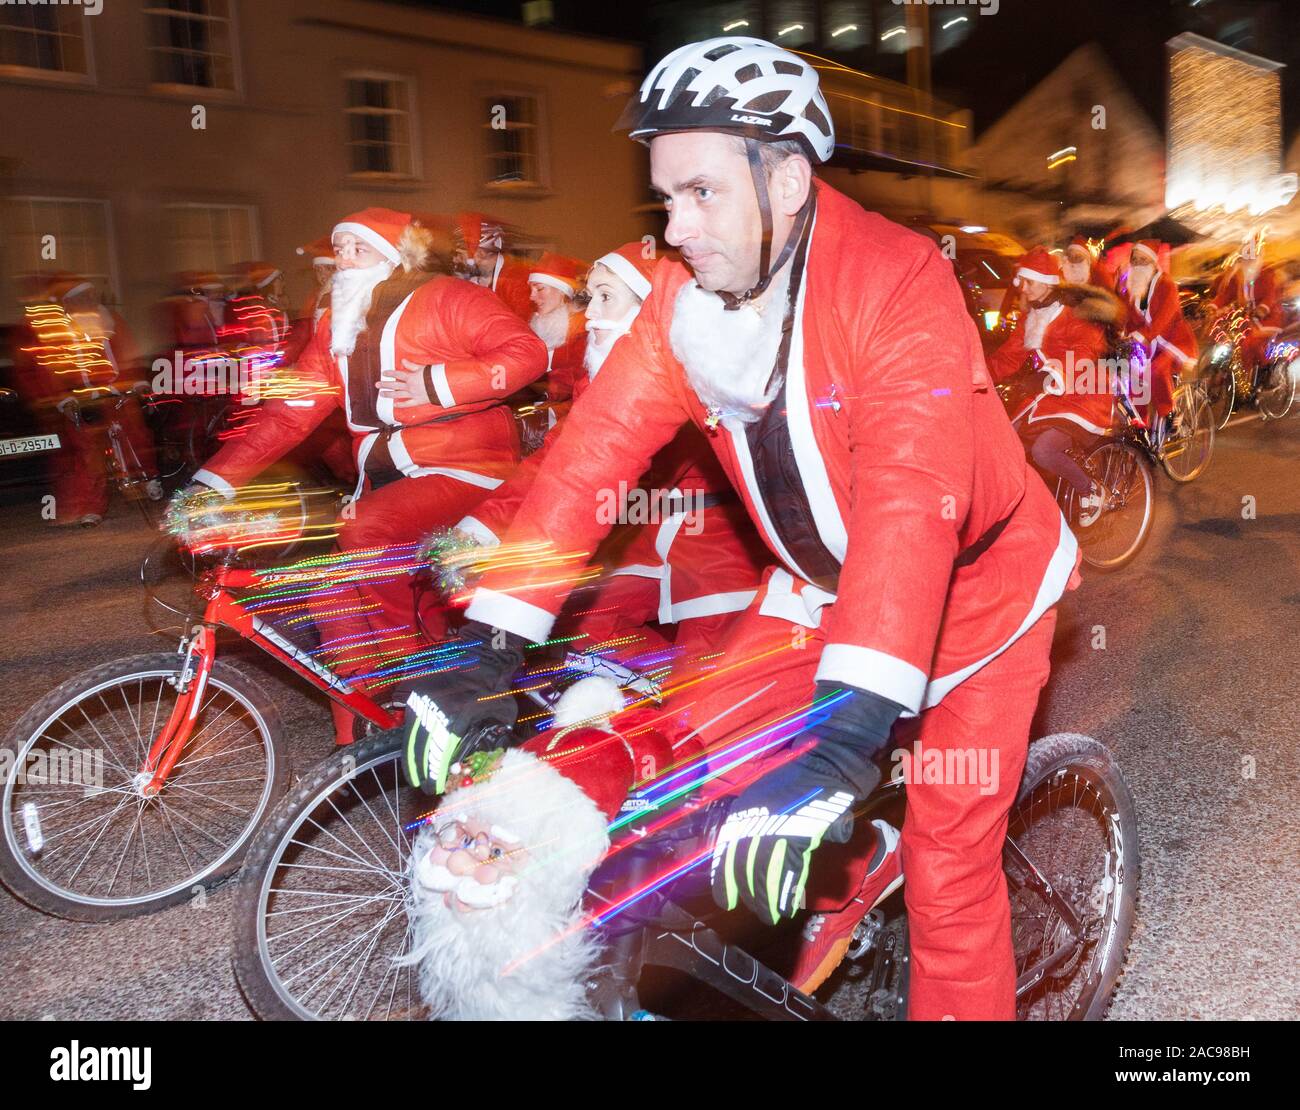 La ville de Cork, Cork, Irlande. 01 Décembre, 2019. Près de 500 personnes habillées en père Noël pour le cycle annuel dans les rues de la ville de Cork pour aider à recueillir des fonds pour l'Hôpital d'Orthopédie National d'Andratx. Crédit : David Creedon/Alamy Live News Banque D'Images